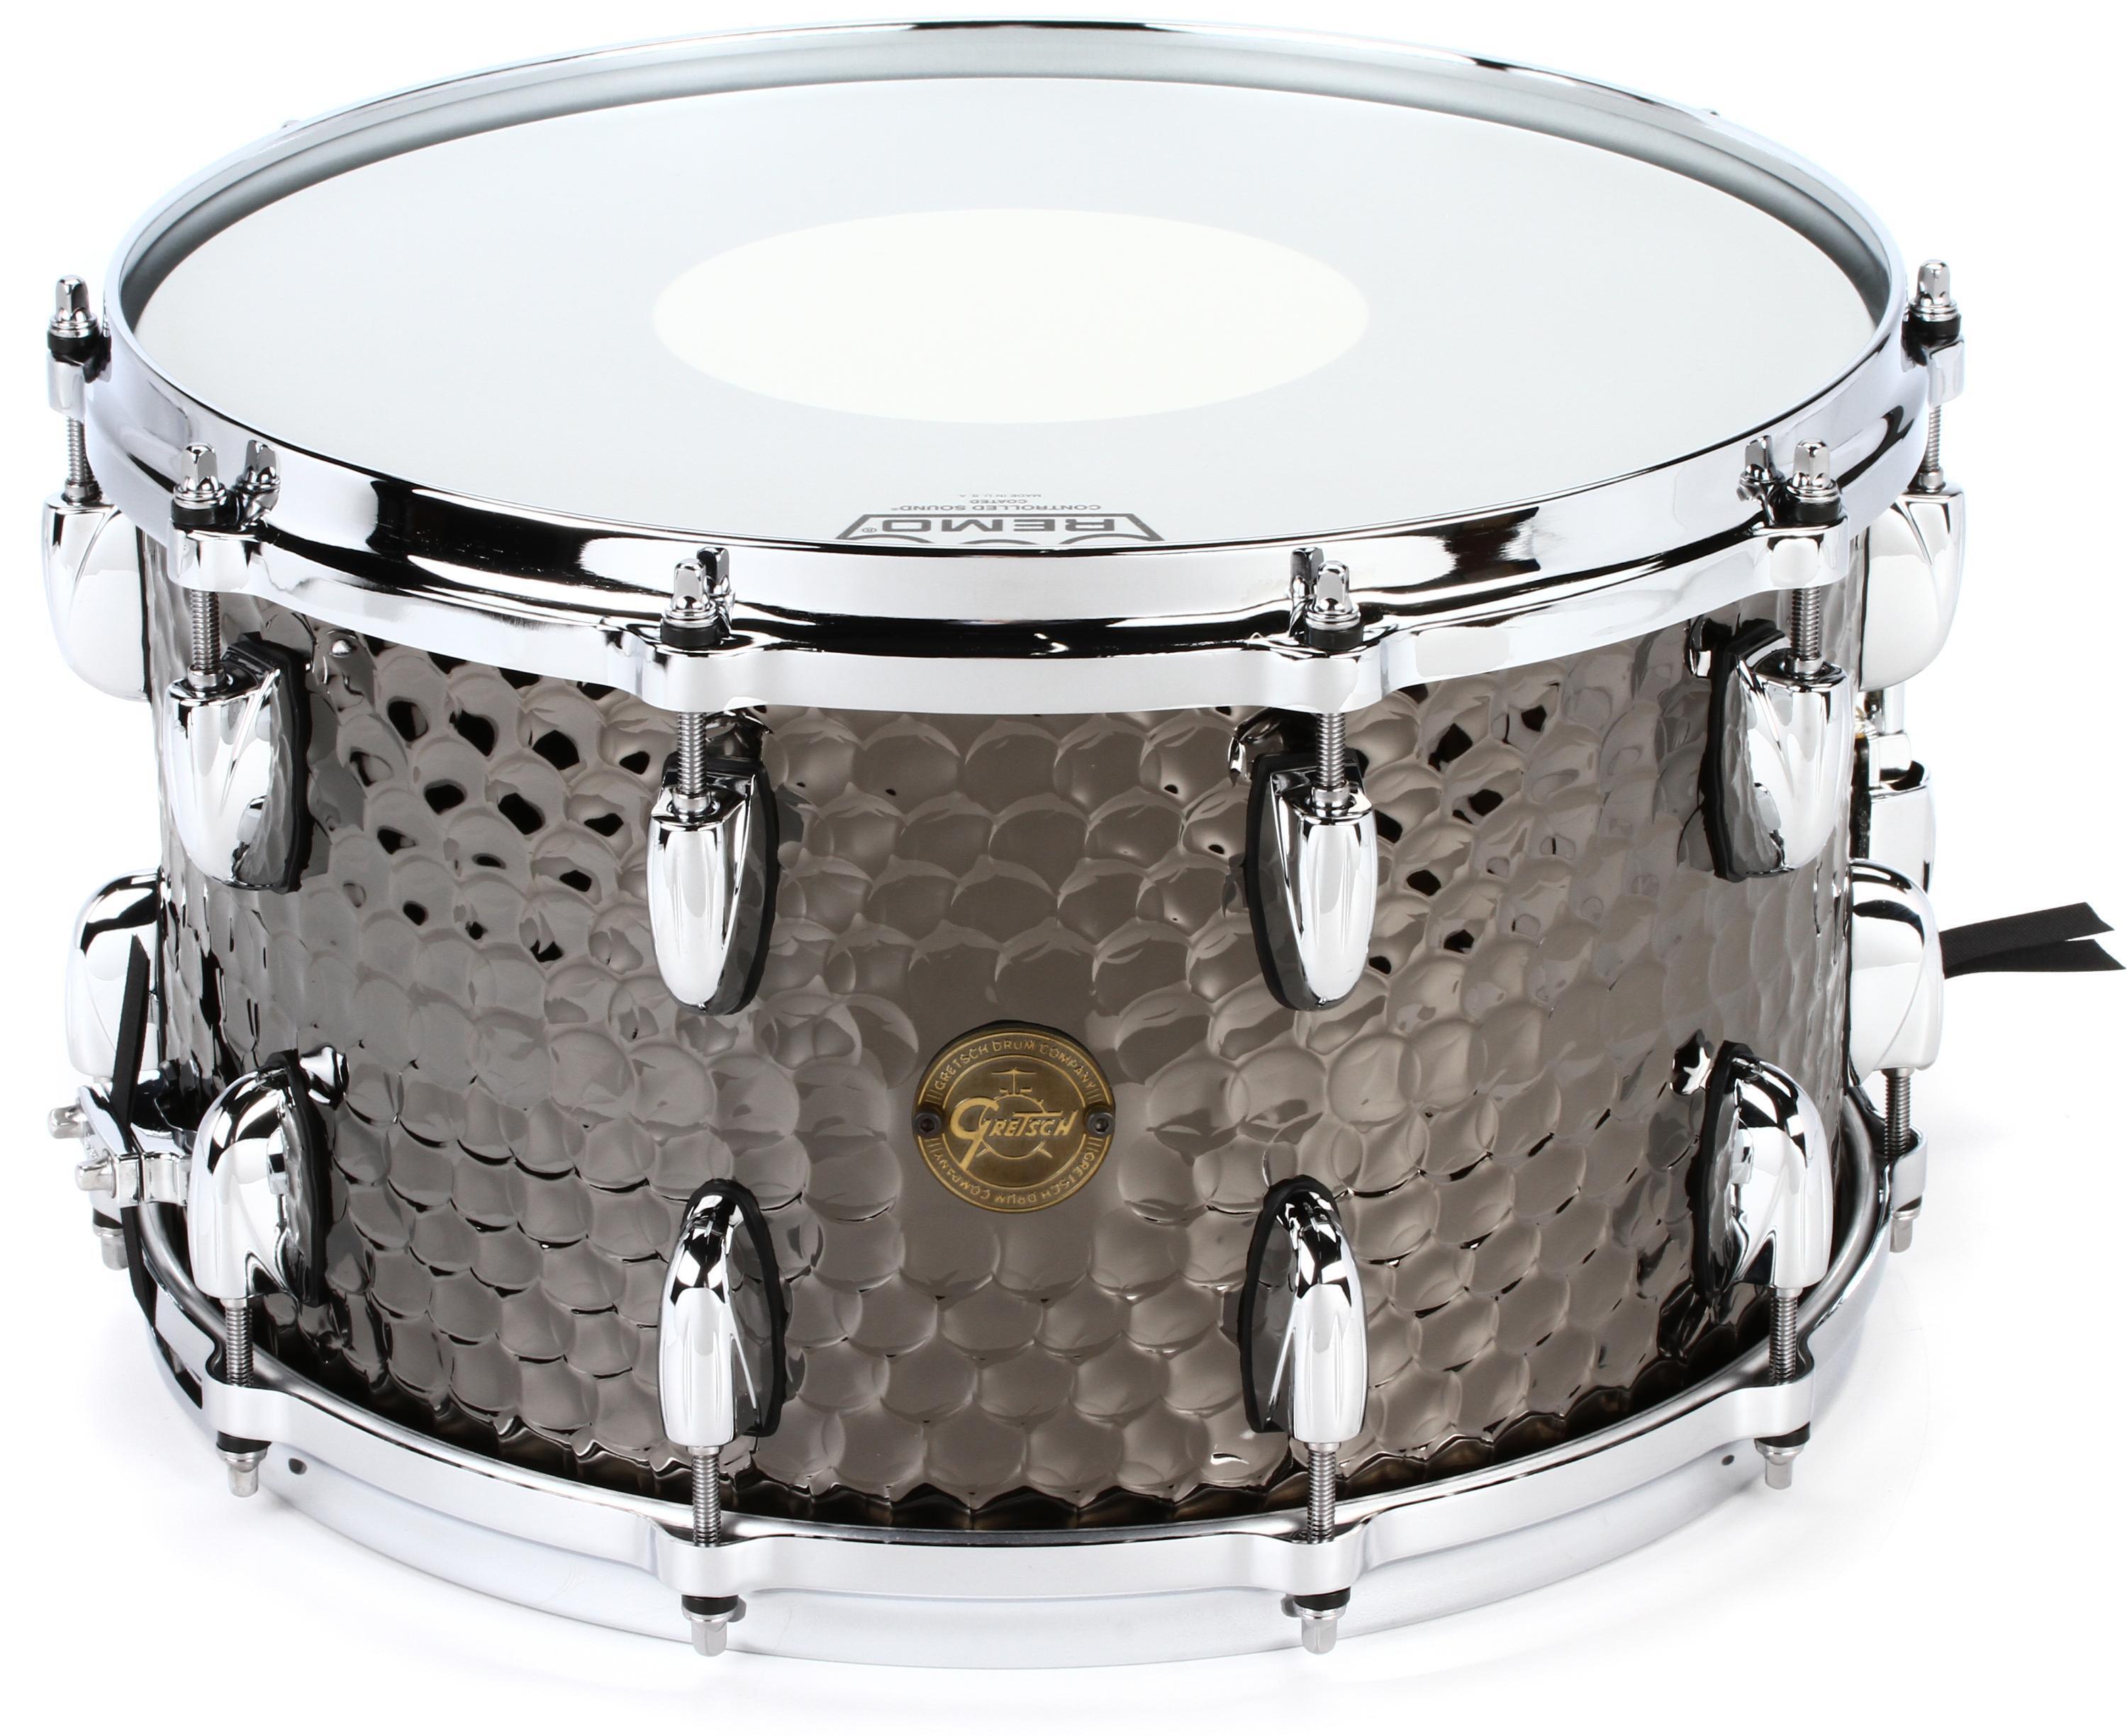 Gretsch Drums Hammered Black Steel Snare Drum - 8 x 14-inch